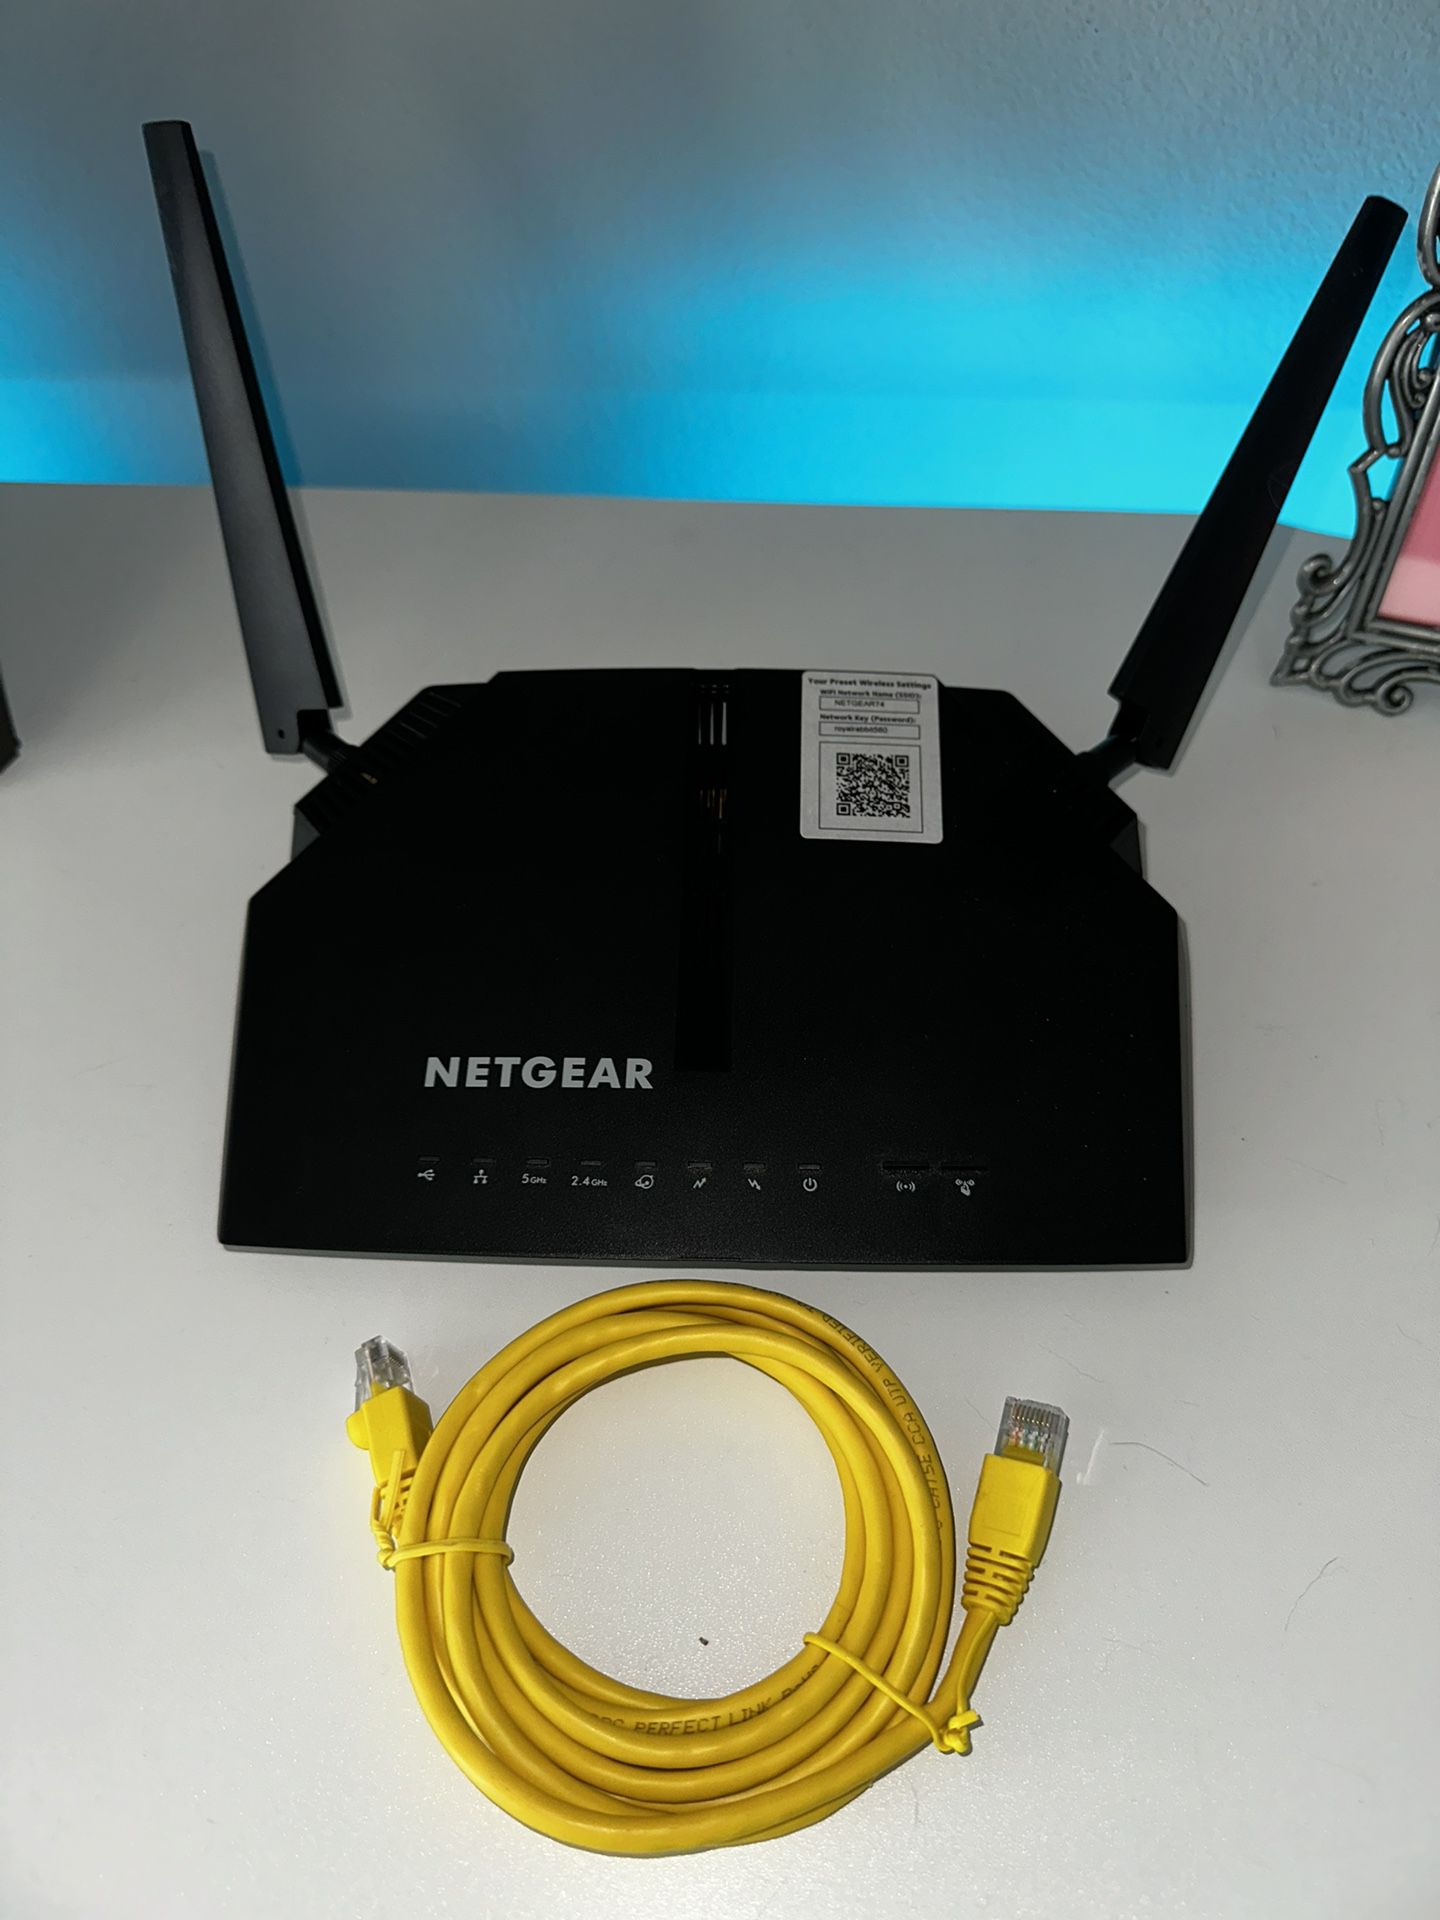 Netgear WiFi Router Modem